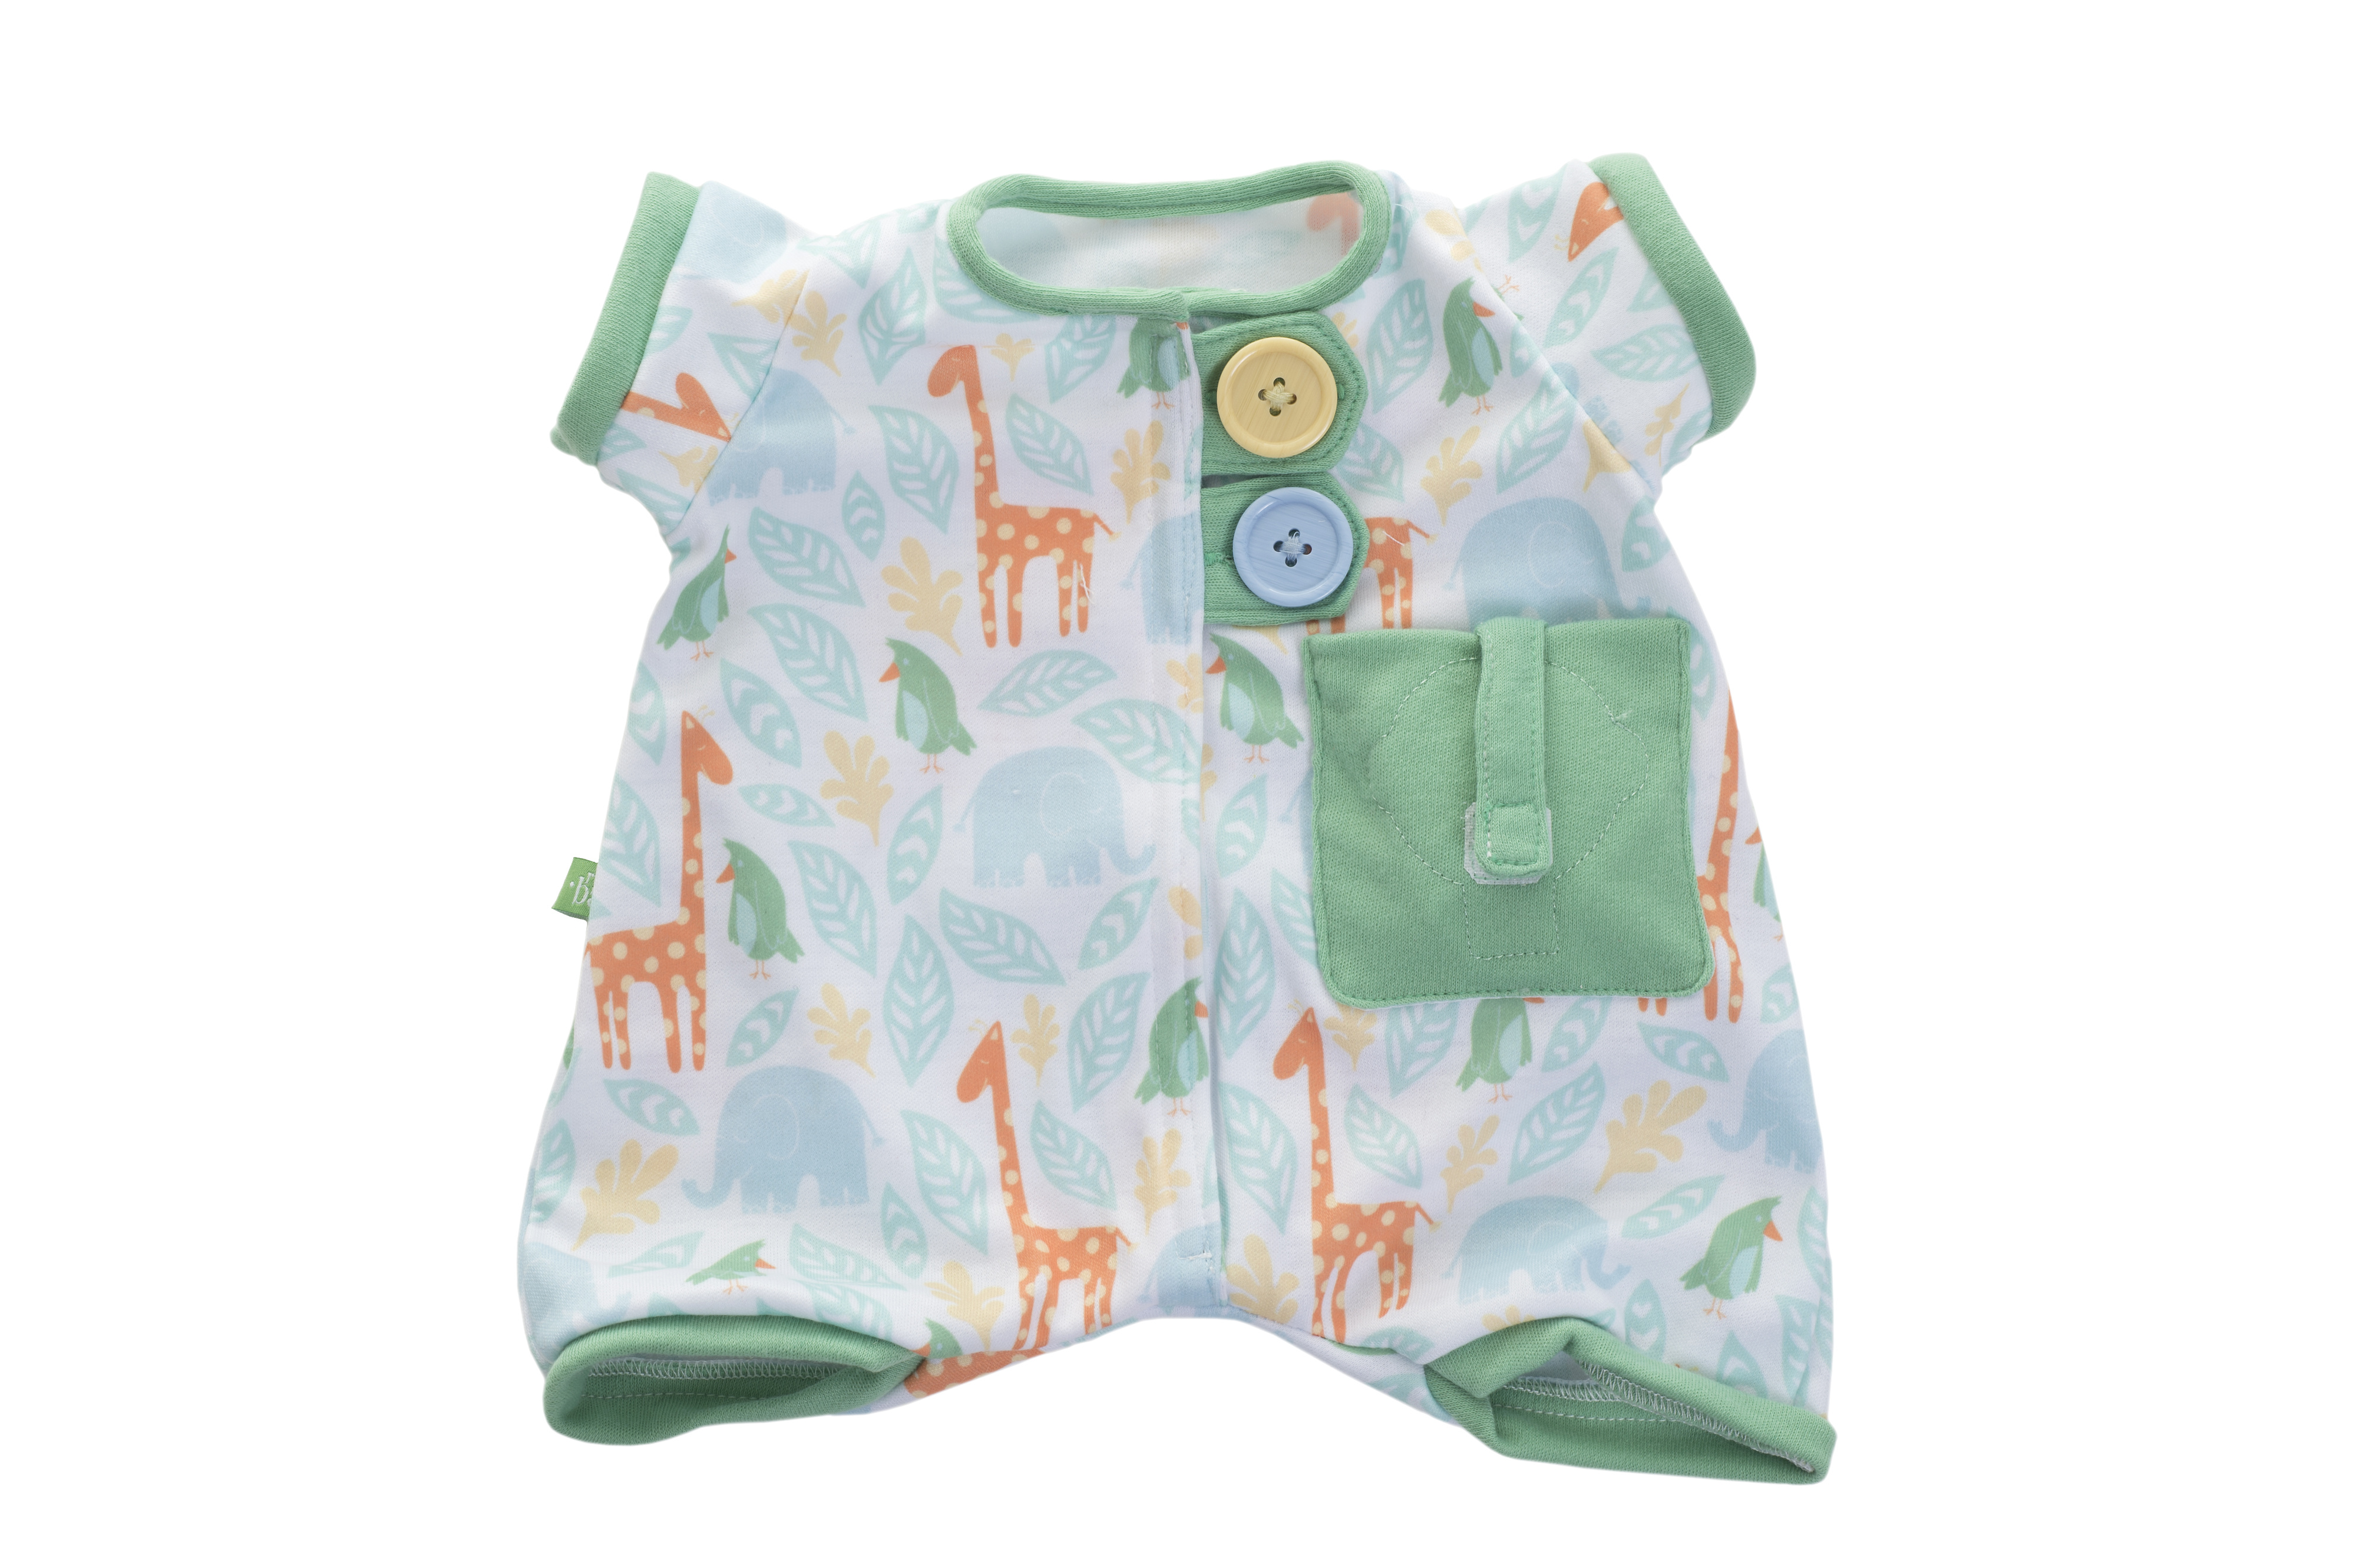 Outlet rubens barn nukenvaatteet vihreä green pajamas baby